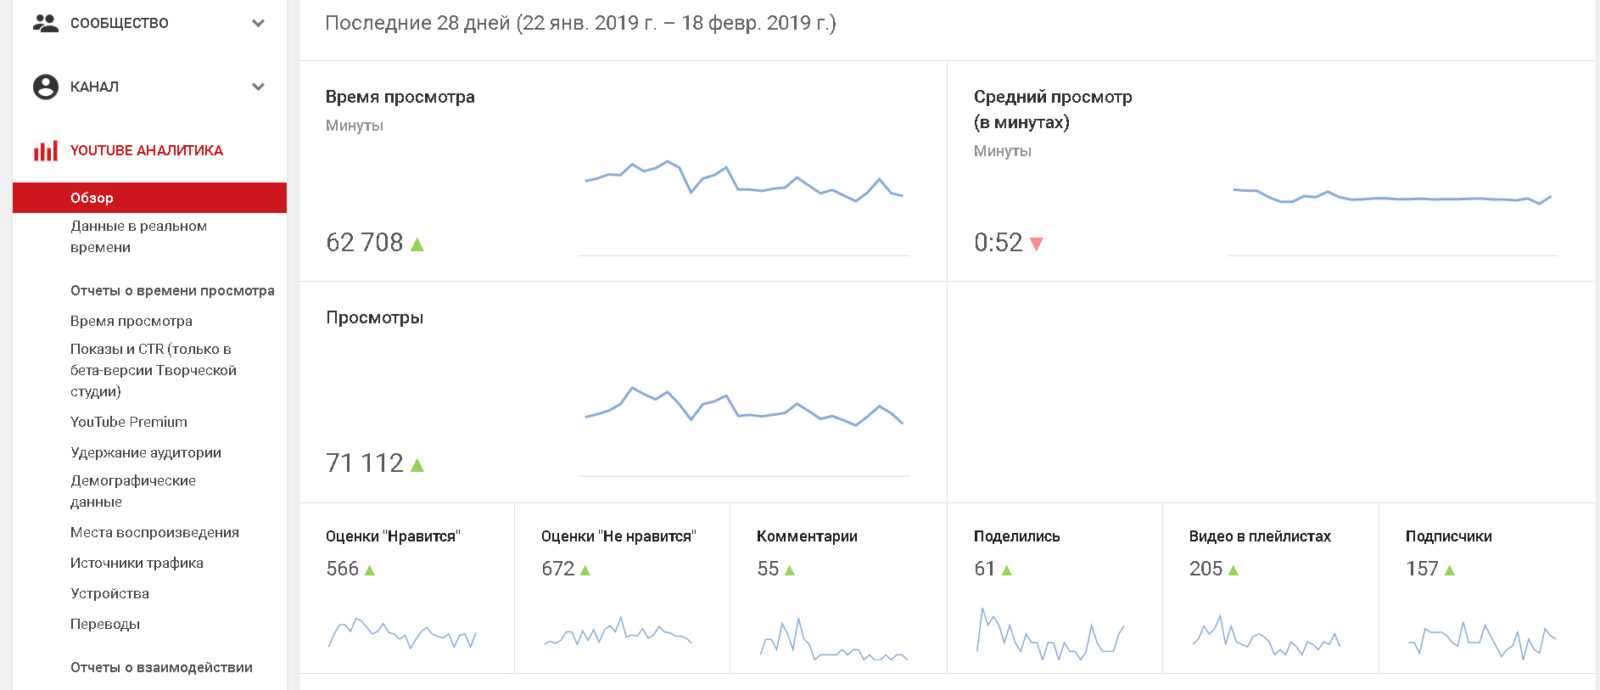 Seokeys: Опыт заработка на YouTube-каналах